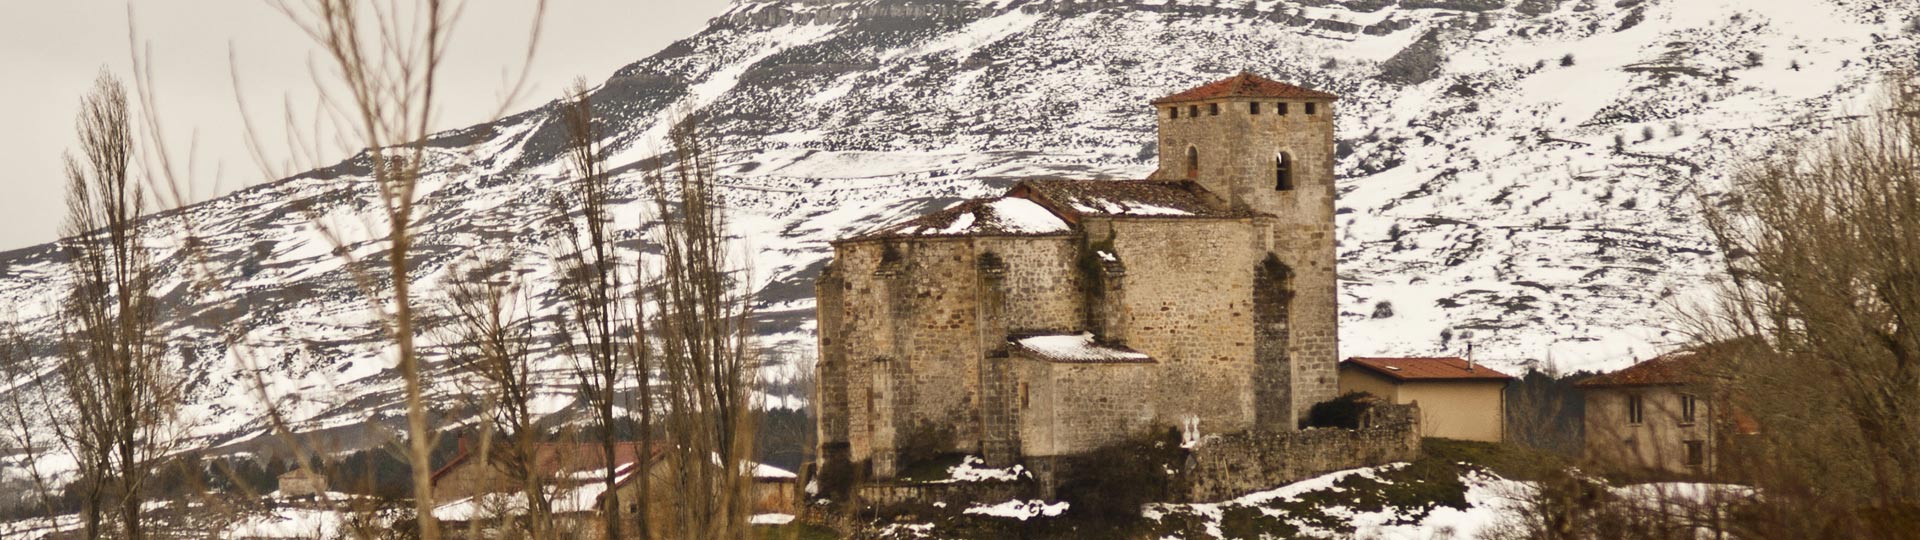 Peña Amaya Geoparque de Las Loras, en Burgos y Palencia